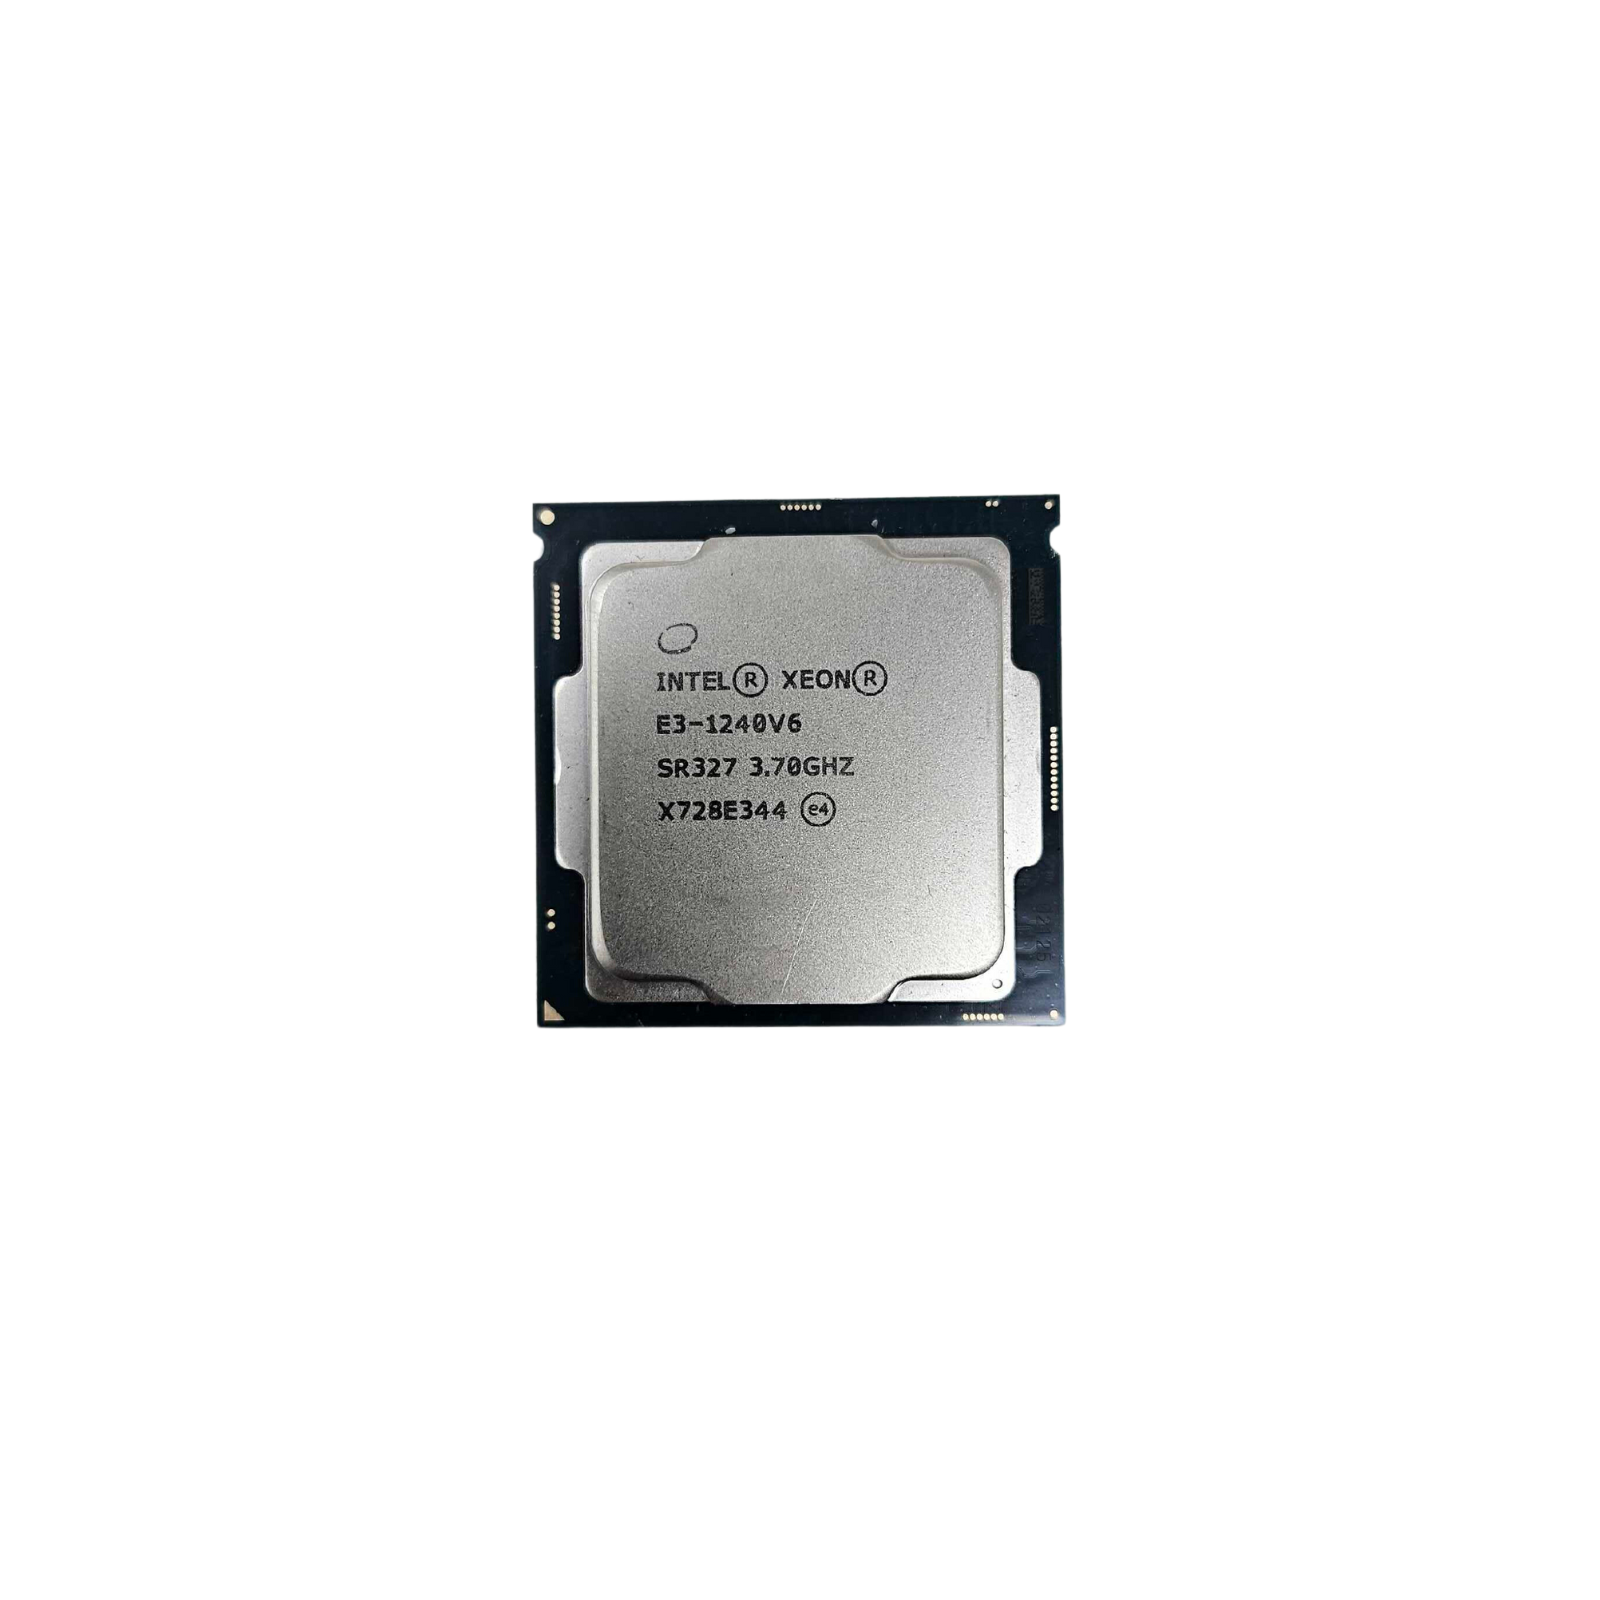 Intel Xeon Quad Core E3-1240v6 3.70GHz FCLGA1151 Processor (E3-1240v6)